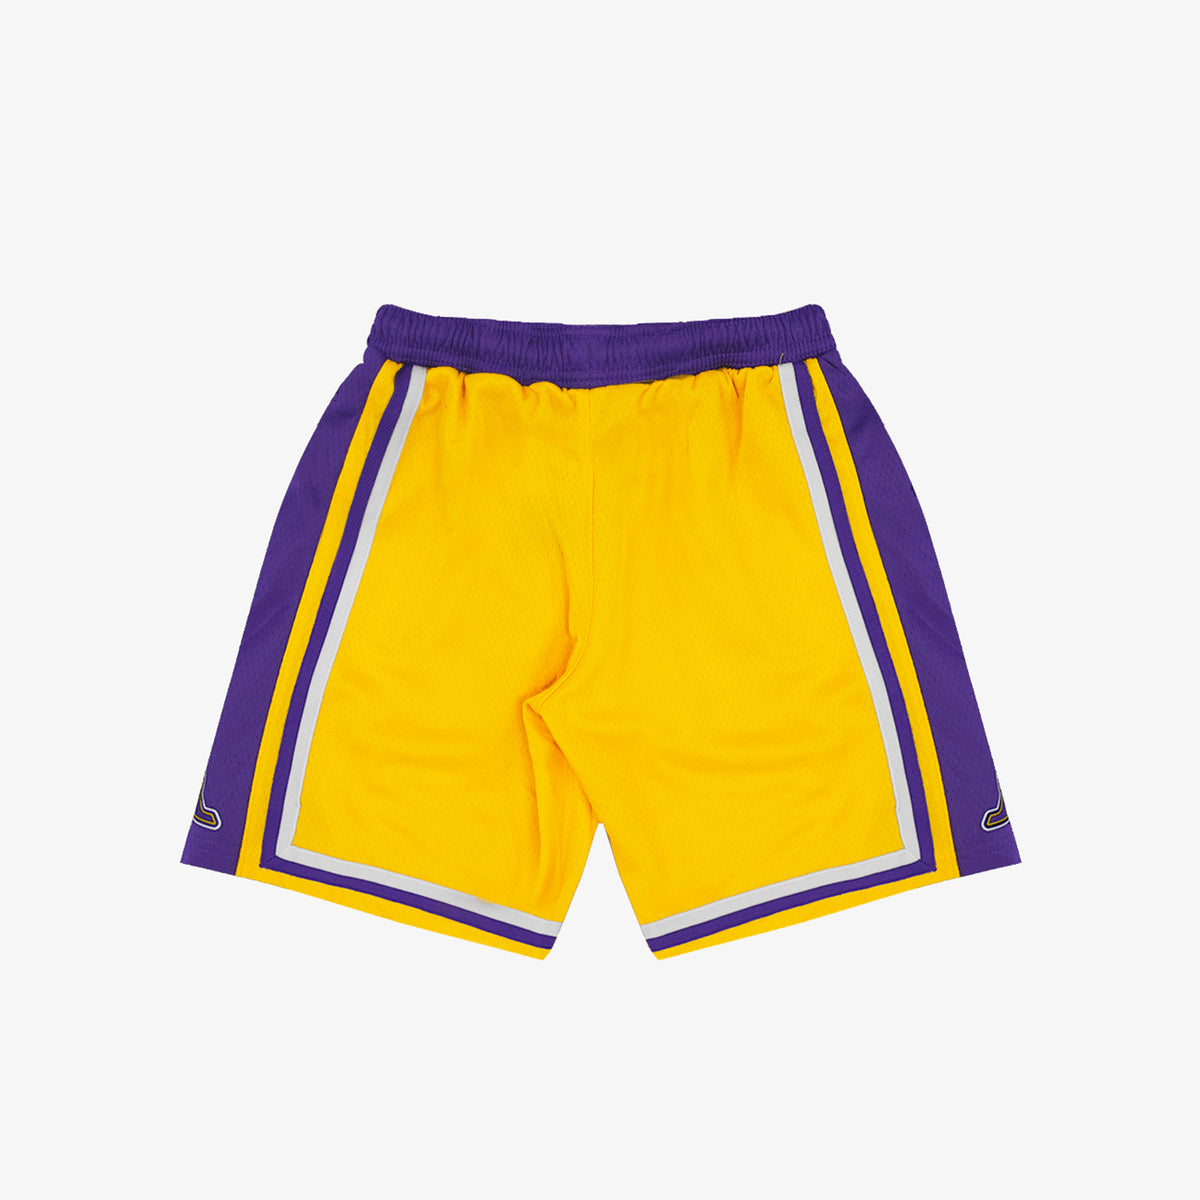 Los Angeles Lakers Shorts, Lakers Mesh Shorts, Performance Shorts